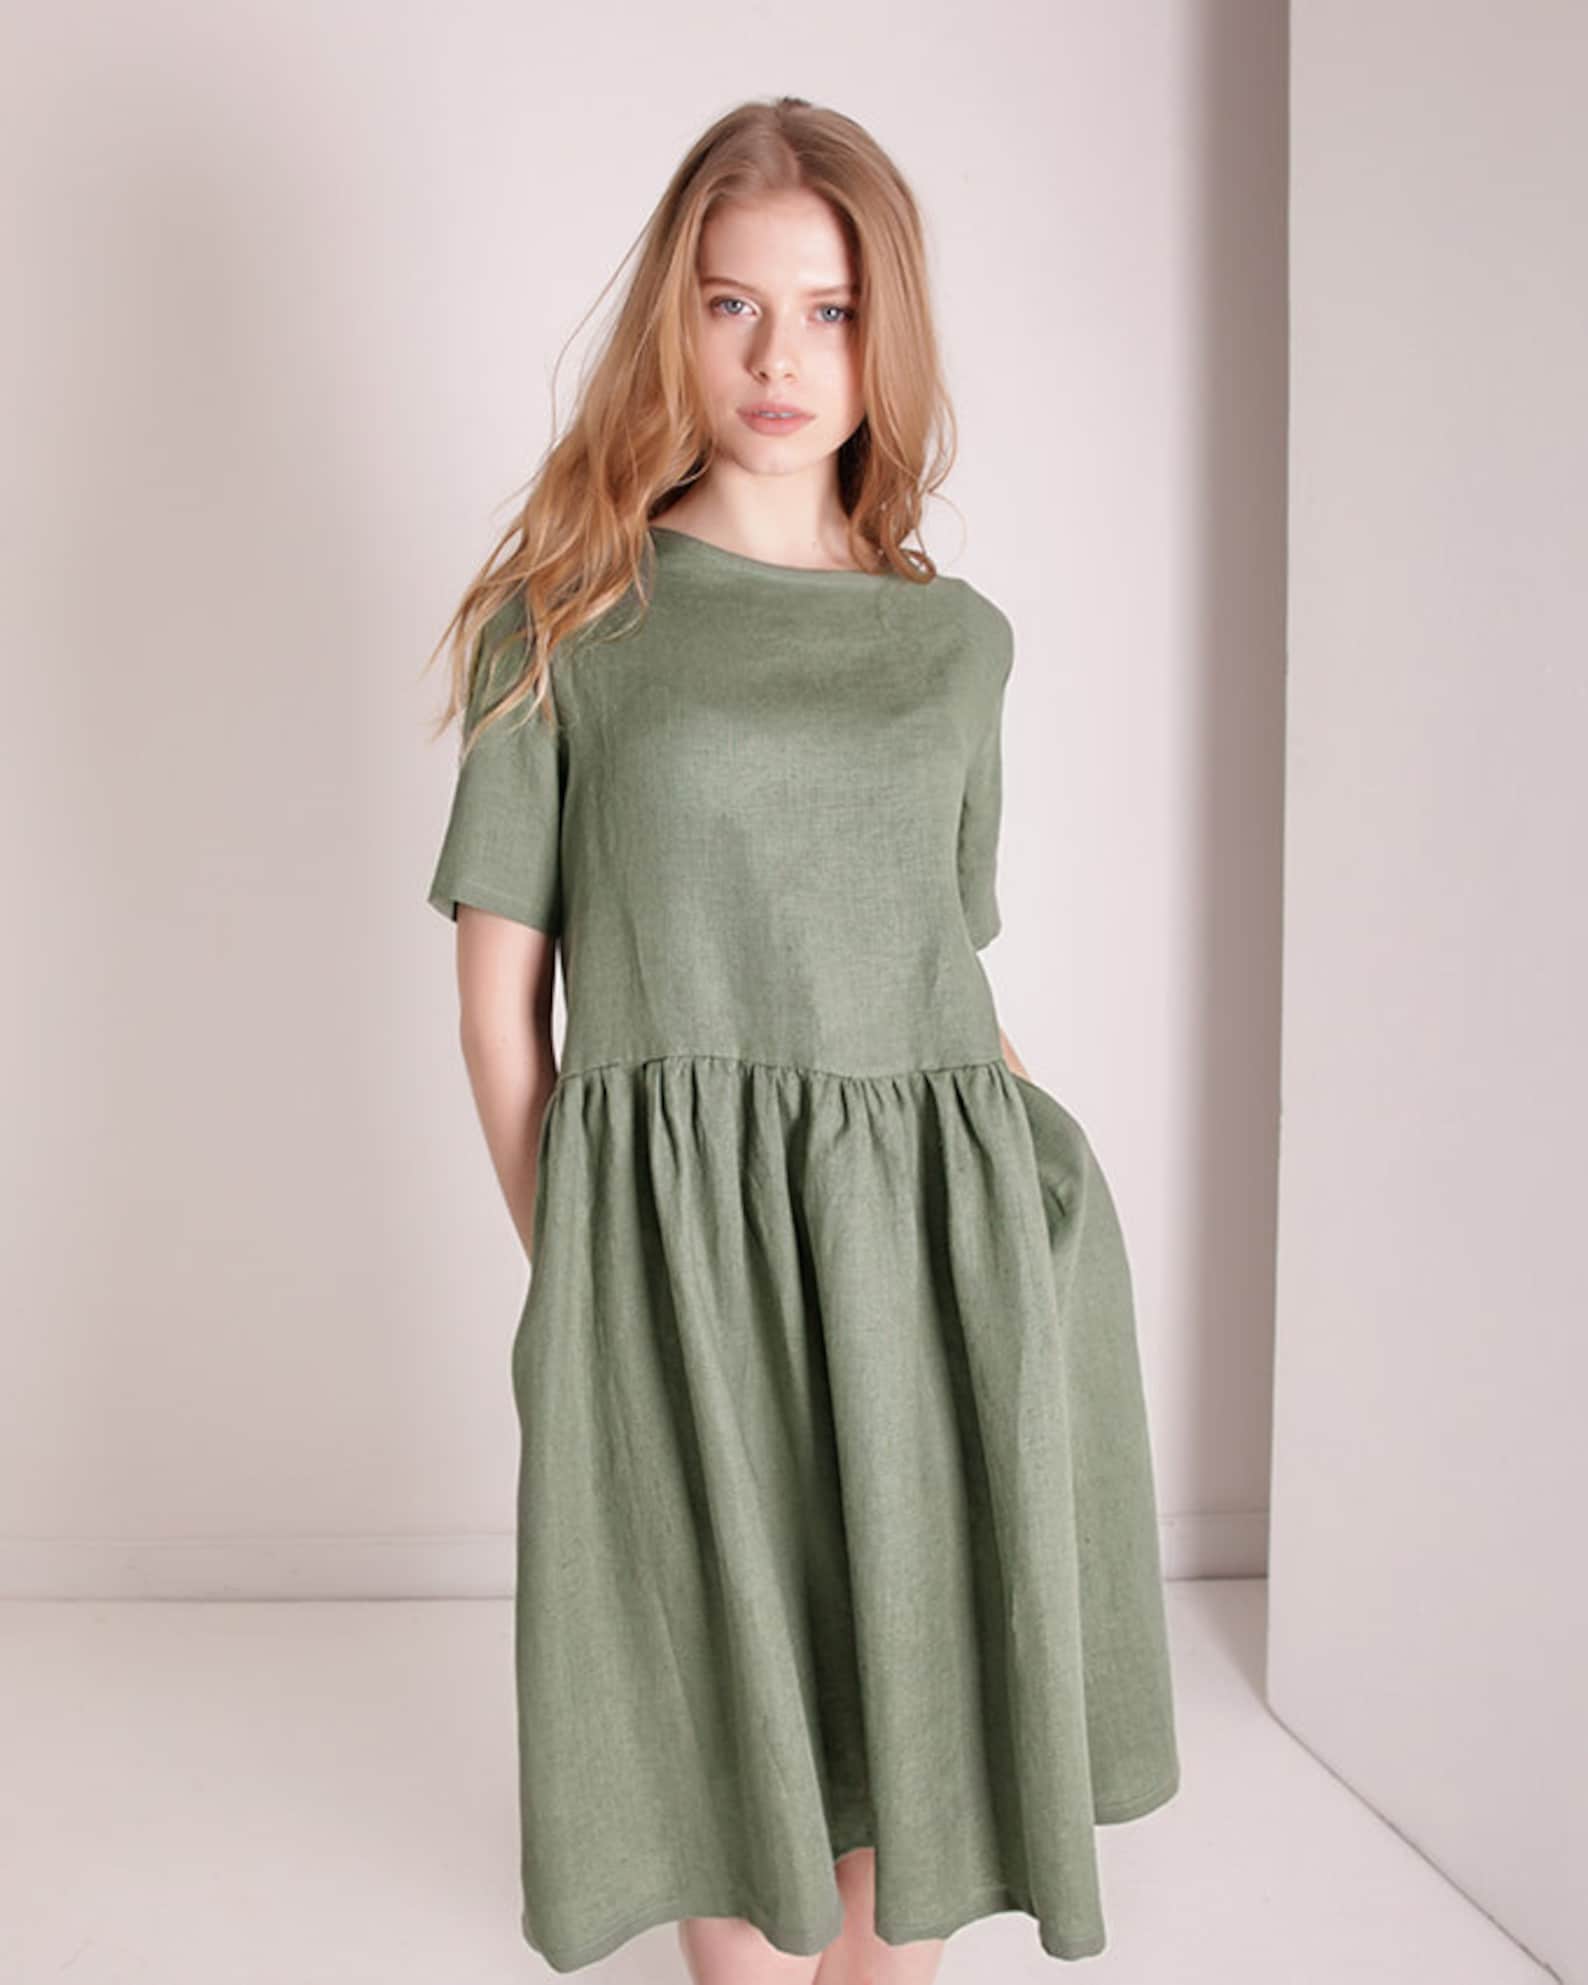 Linen DARLING dress Linen Ruffle Dress Moss Green Linen | Etsy